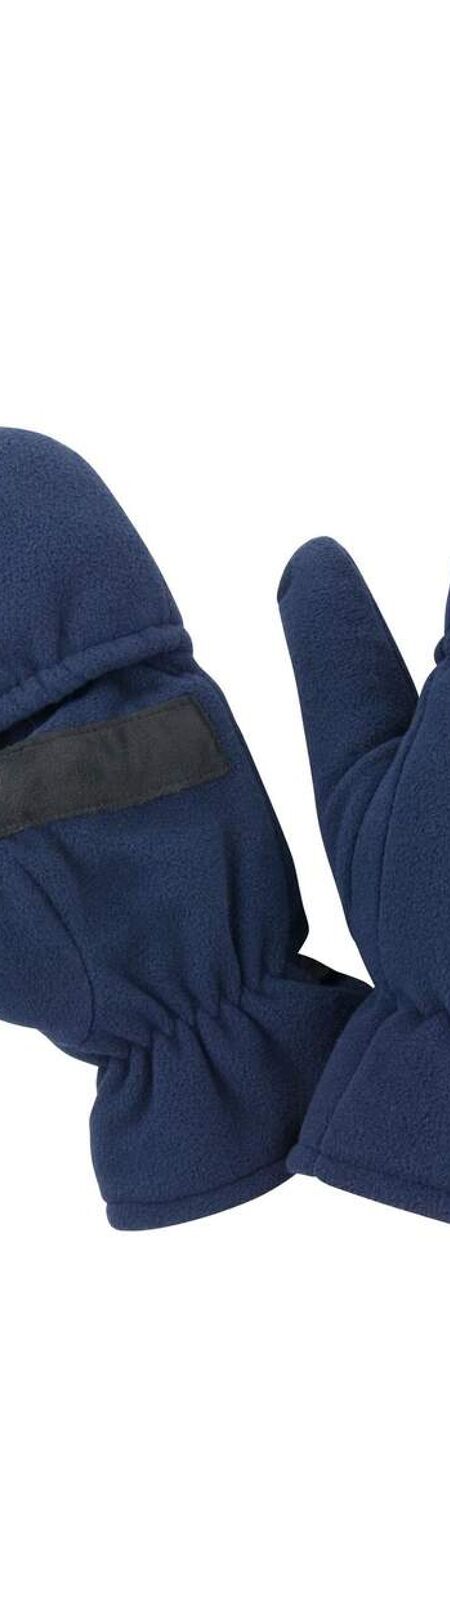 Result Winter Essentials Gripped Gloves (Navy) - UTRW9740